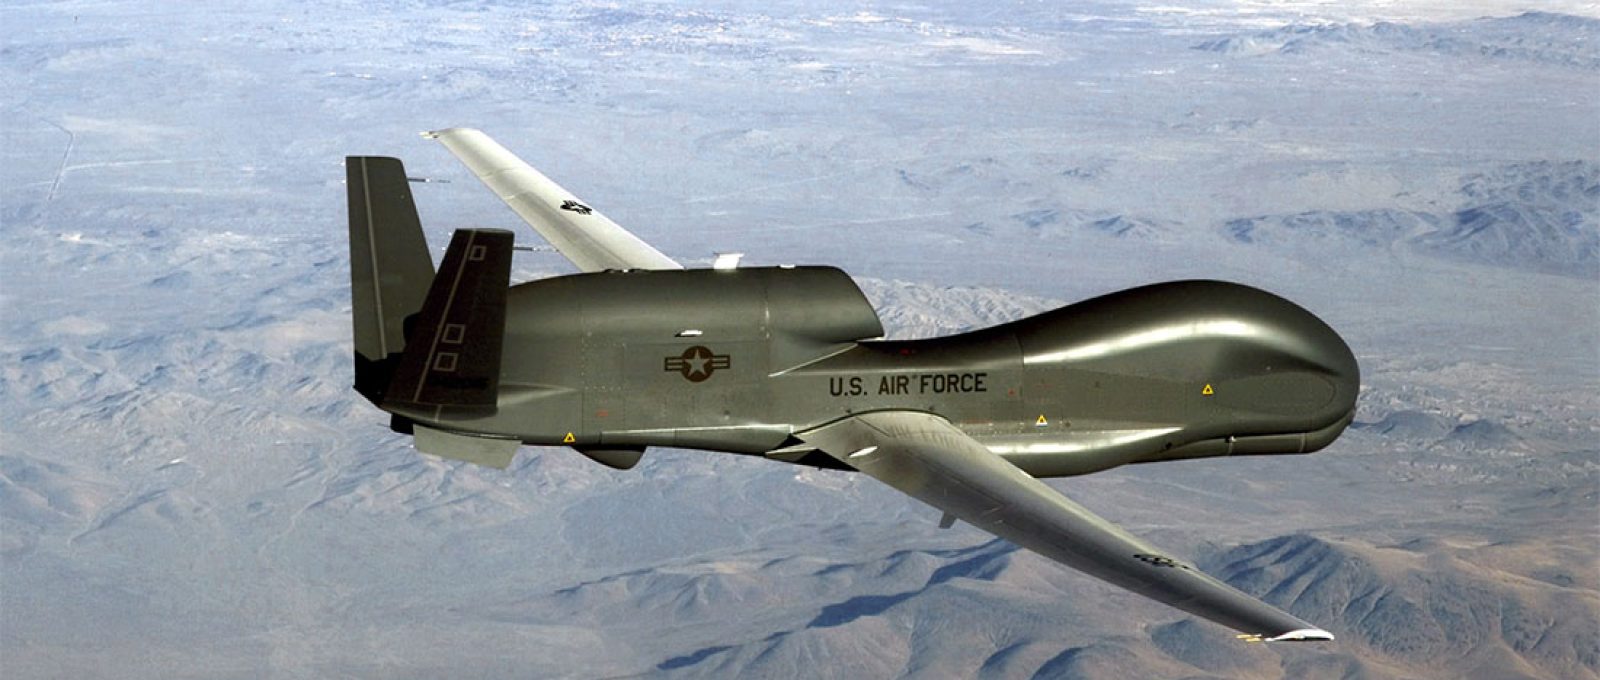 O drone RQ-4 Global Hawk pode registrar dados de inteligência, vigilância e reconhecimento (USAF).